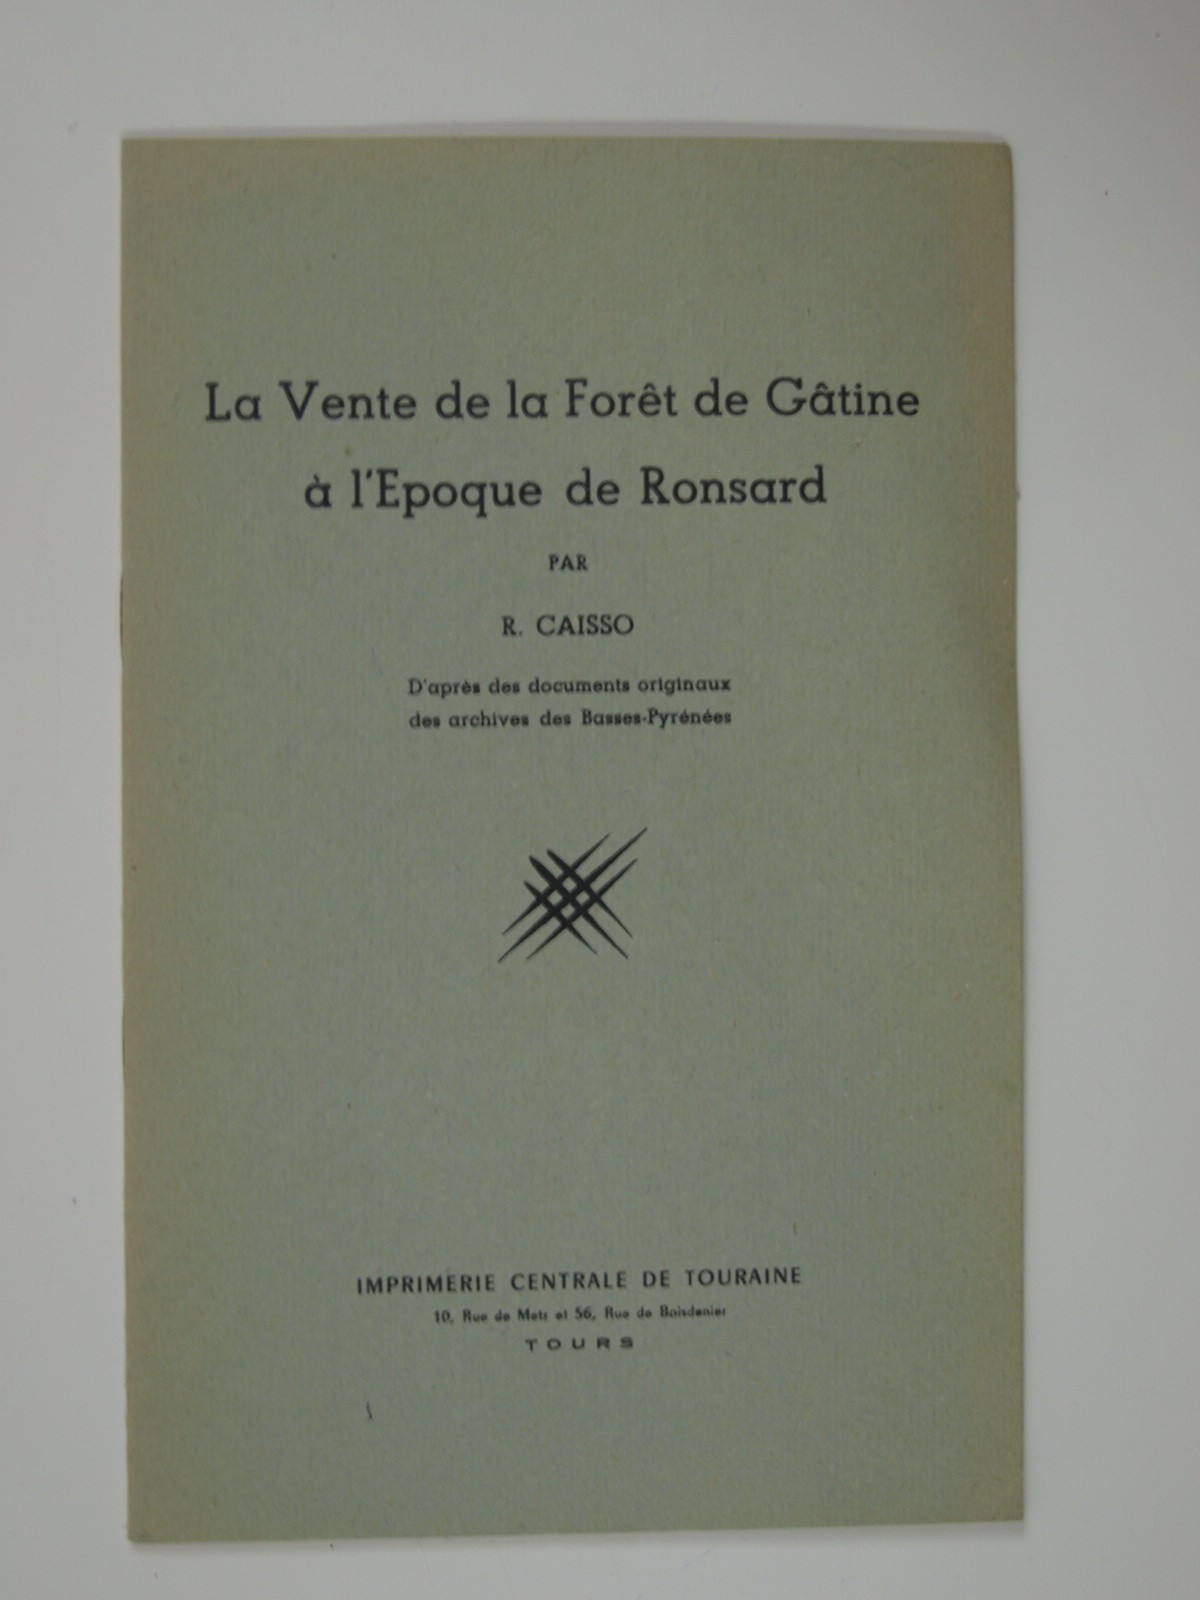 Caisso R. : La vente de la foret de Gatine à l'époque de Ronsard